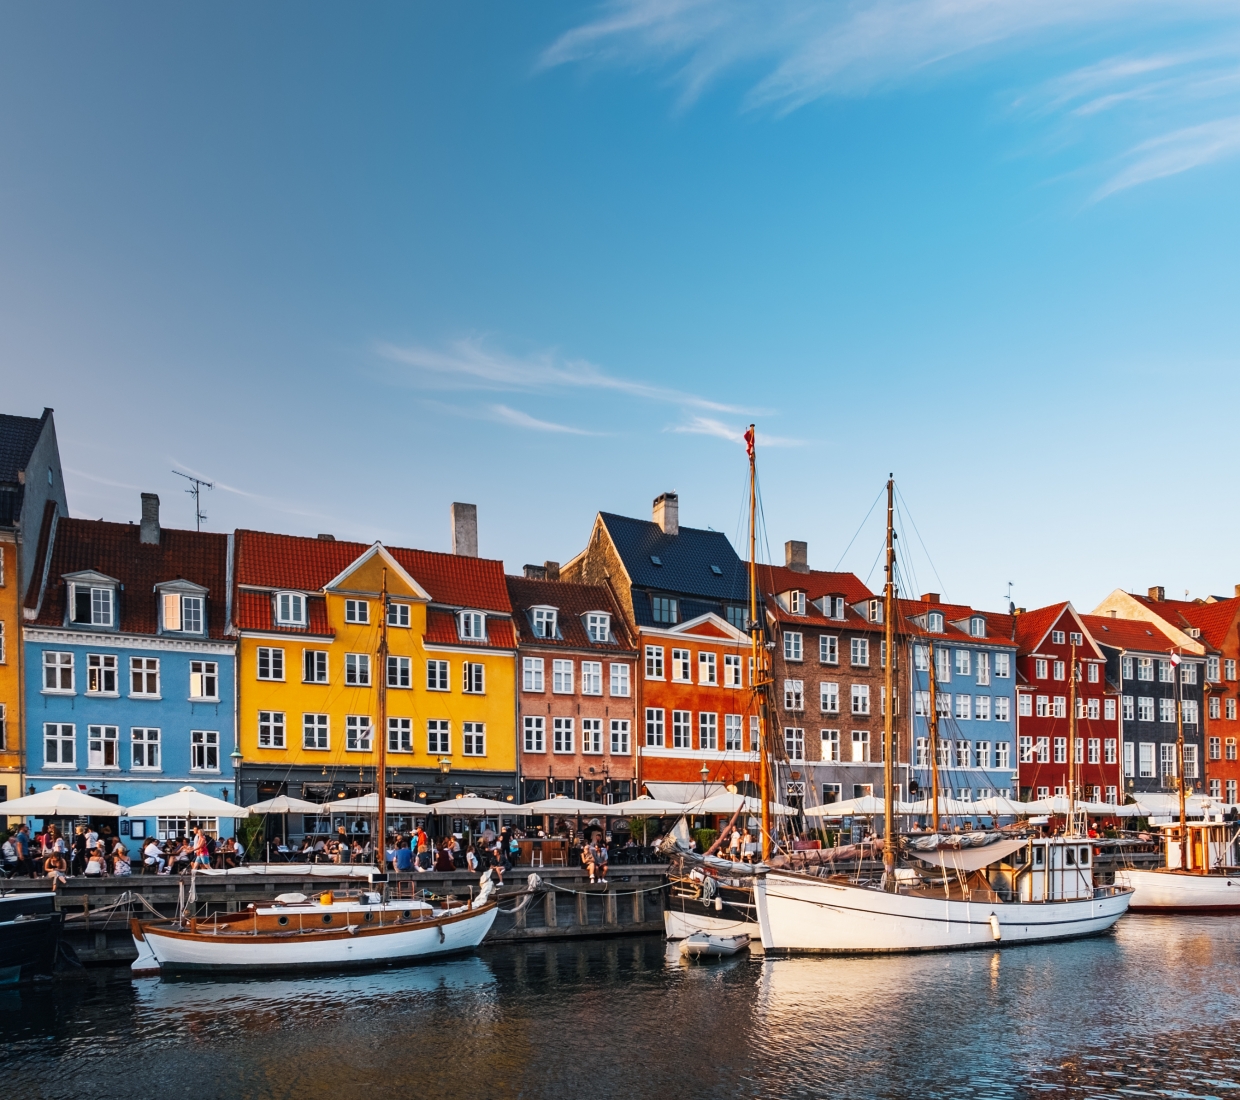 Seleção dos melhores e mais bonitos hotéis e casas de férias em Copenhague